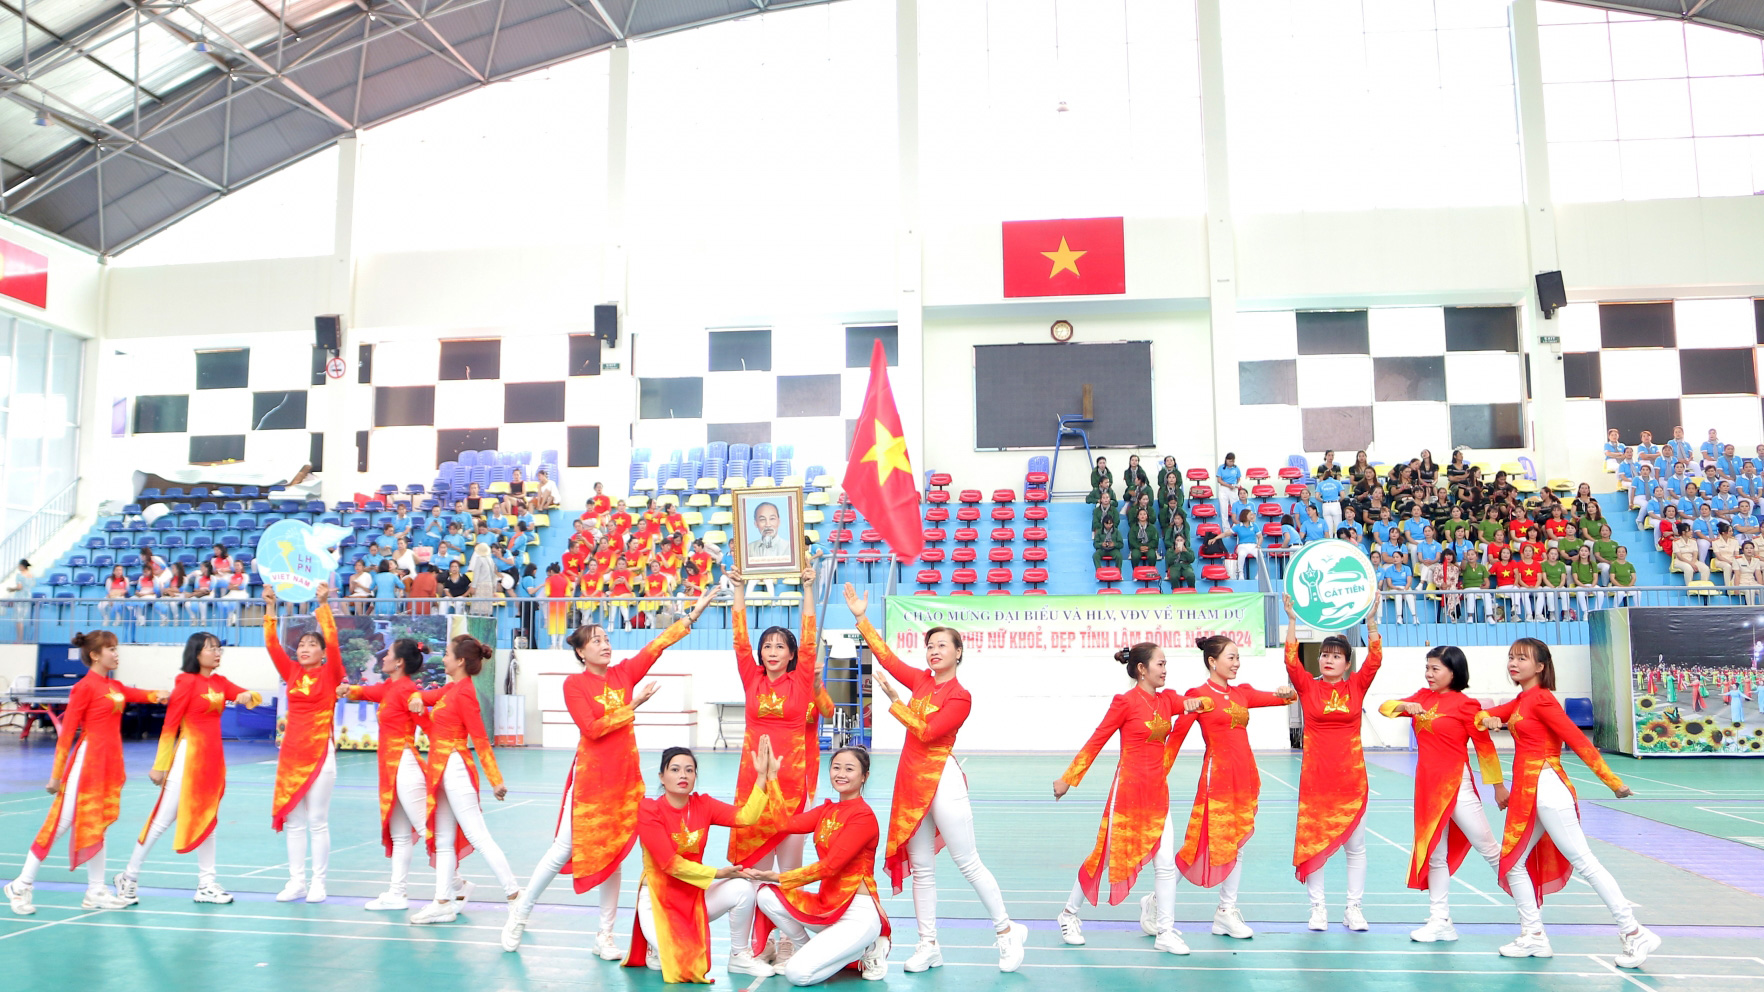 Phần thi dân vũ trên nền nhạc các ca khúc Việt Nam ca ngợi quê hương, đất nước